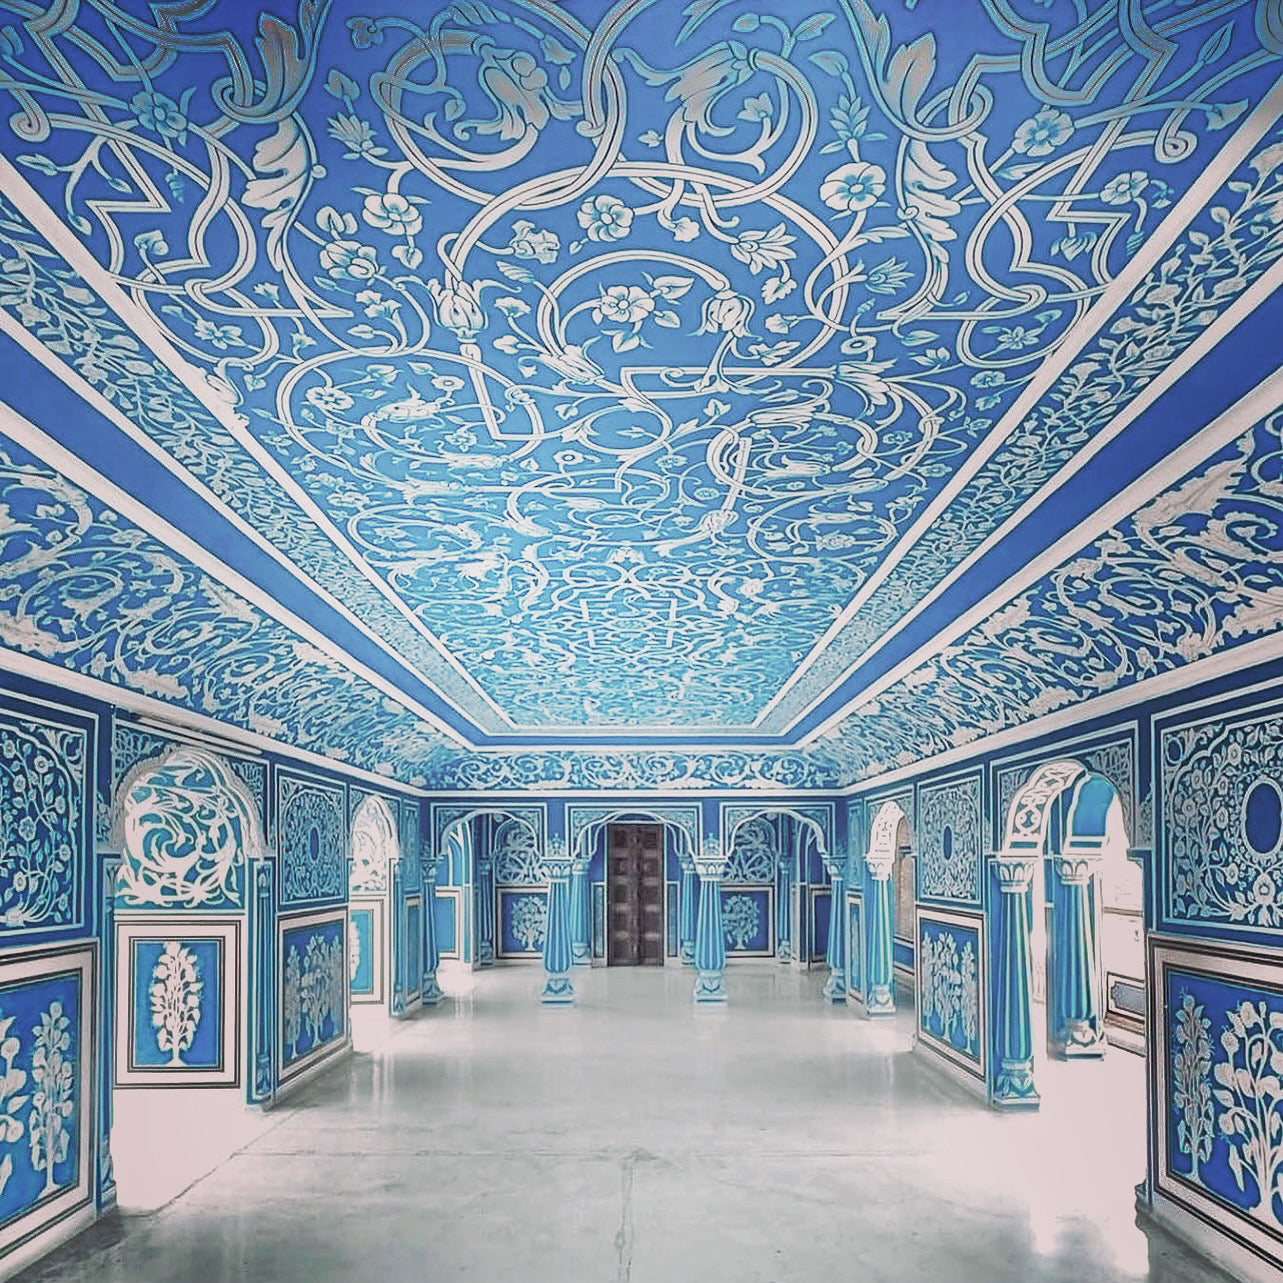 インドの青いタオルで埋め尽くされたブルーの部屋